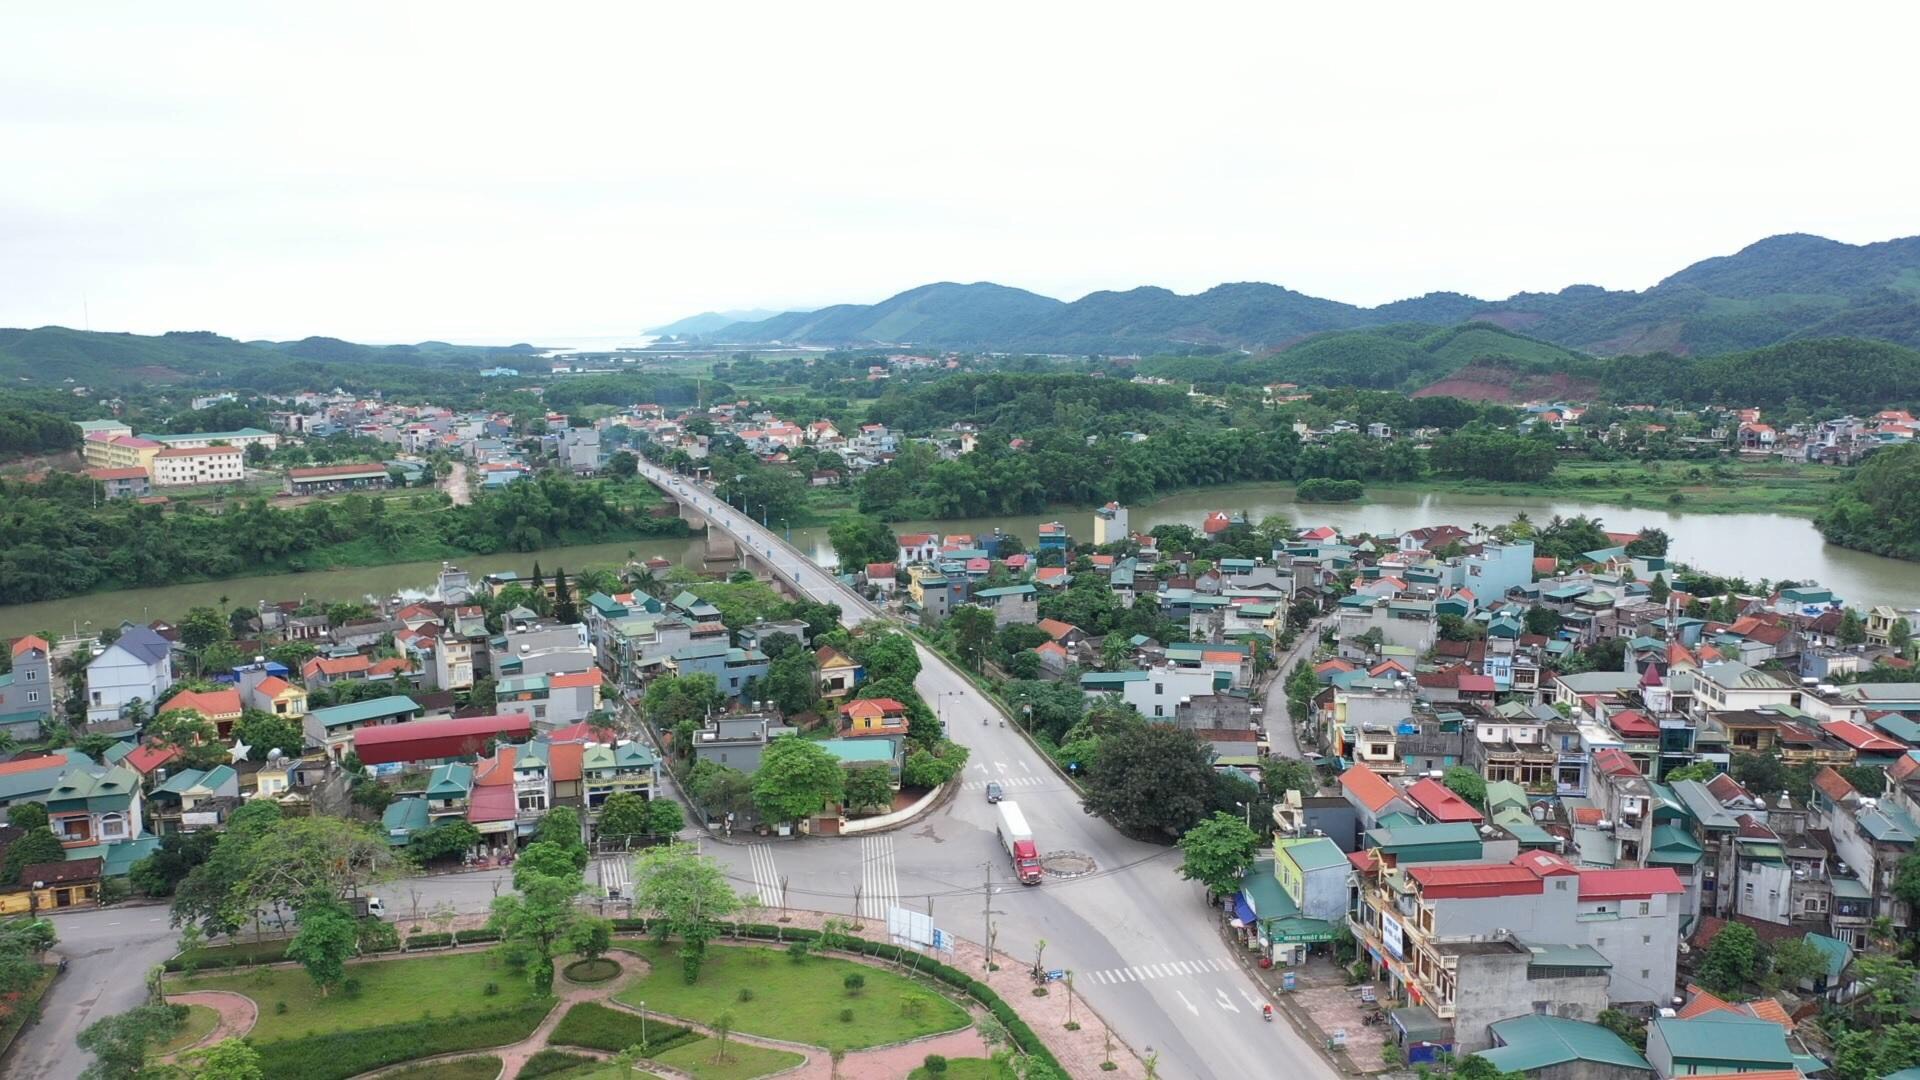 Hệ thống giao thông tại huyện Tiên Yên ngày càng phát triển đồng bộ. Ảnh: Xuân Thao